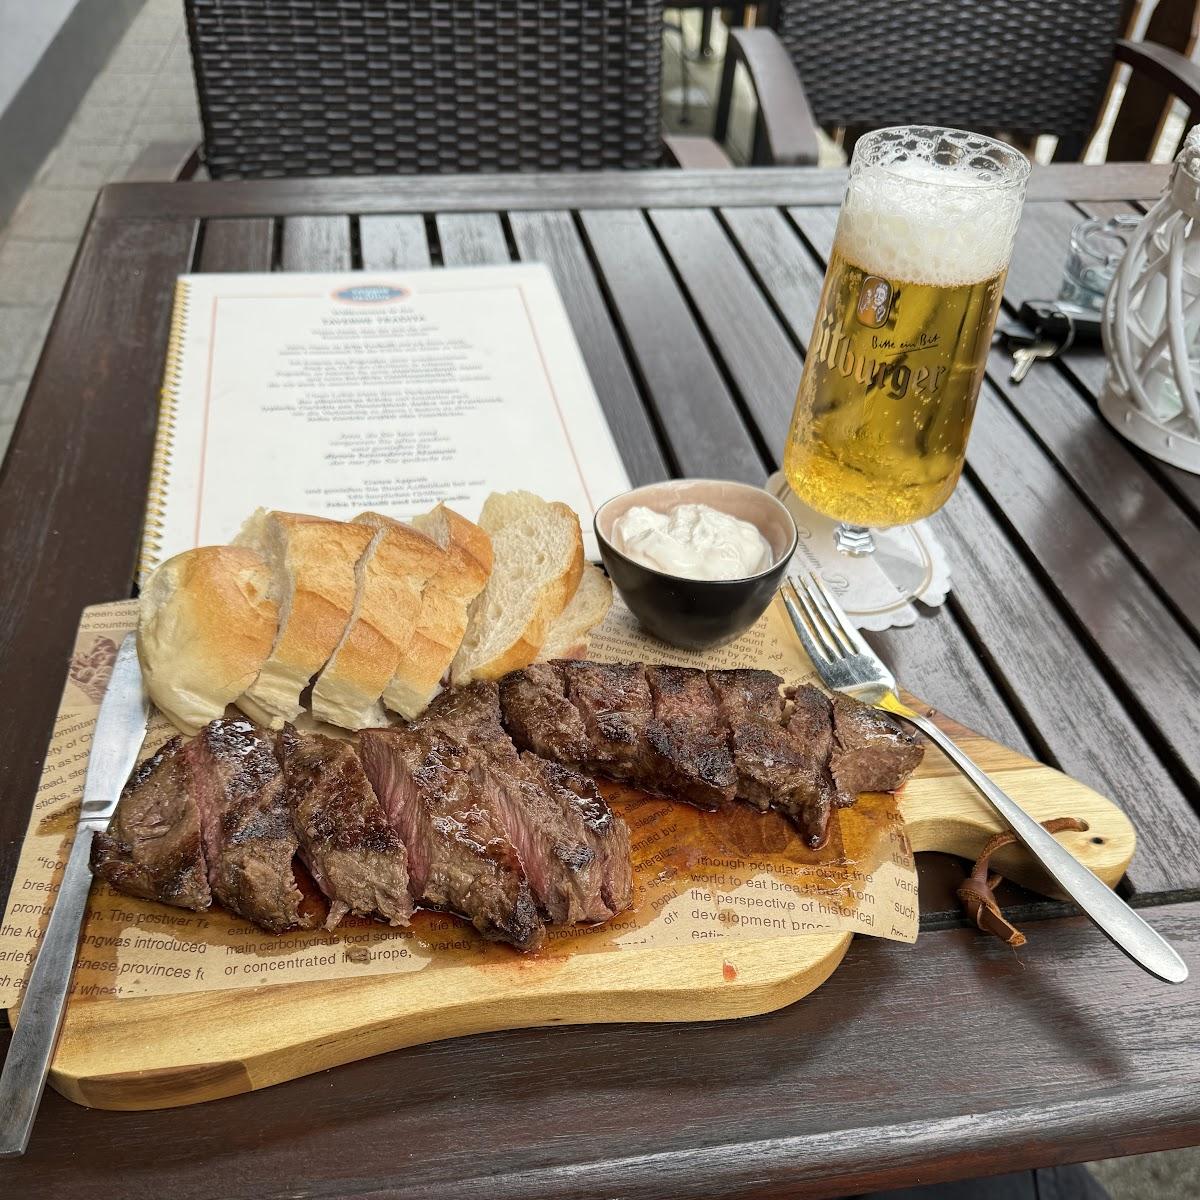 Restaurant "Taverne Tradita" in Gerolstein